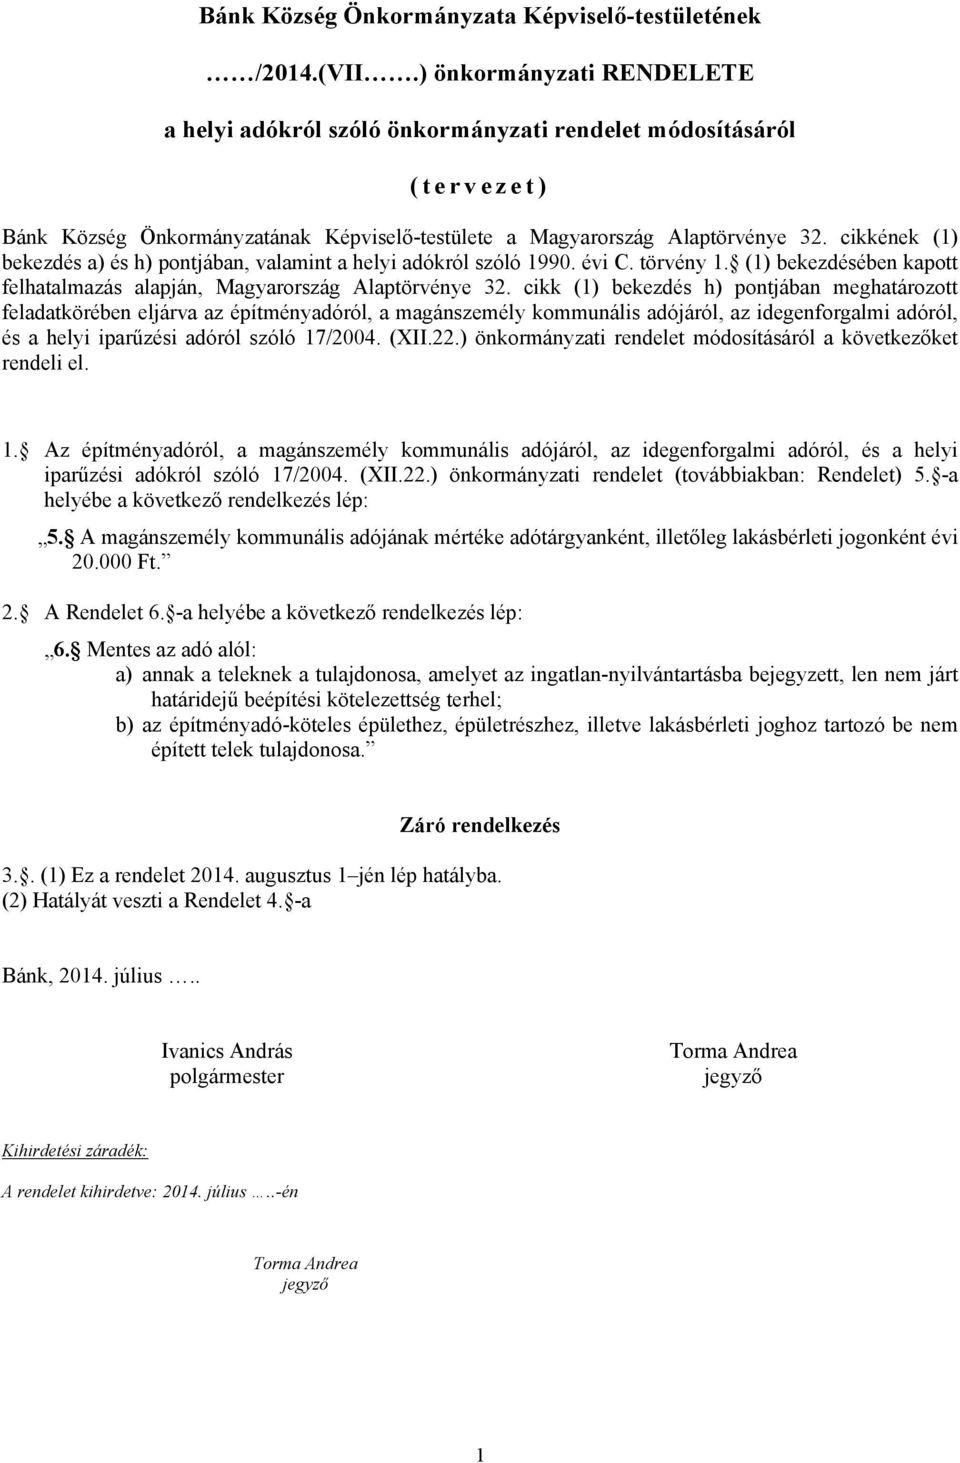 cikkének (1) bekezdés a) és h) pontjában, valamint a helyi adókról szóló 1990. évi C. törvény 1. (1) bekezdésében kapott felhatalmazás alapján, Magyarország Alaptörvénye 32.